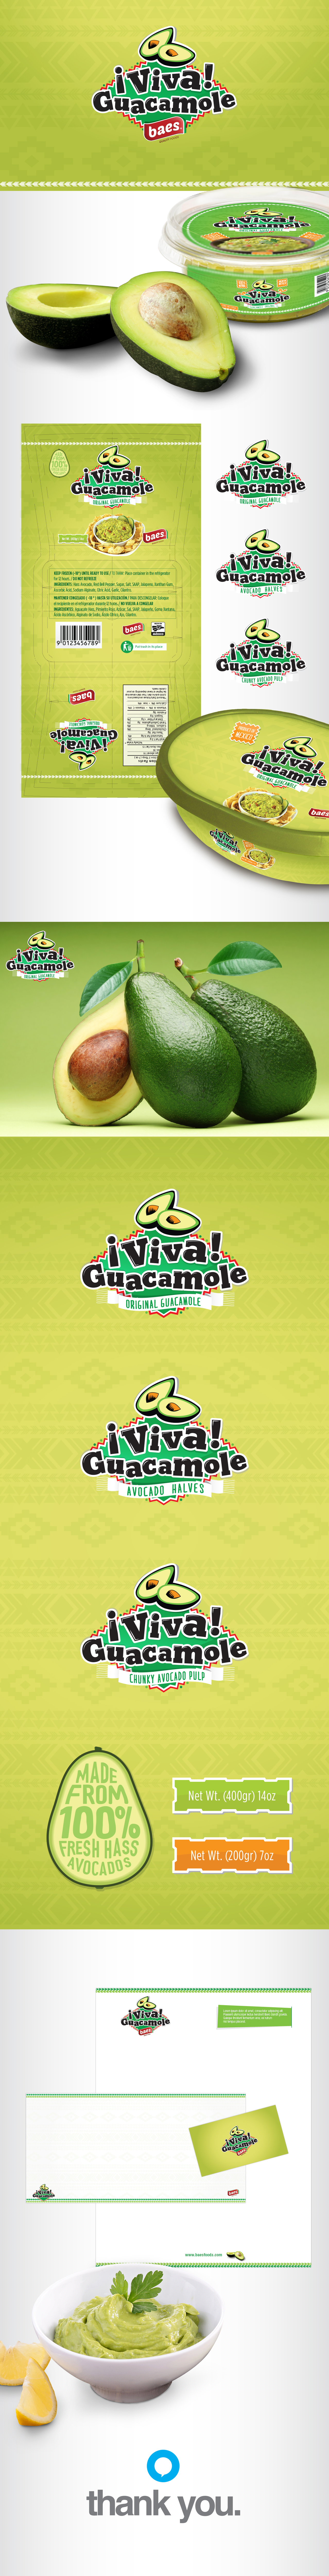 avocado guacamole Mexican green natural pulp 5demayo maythefifth hass Viva